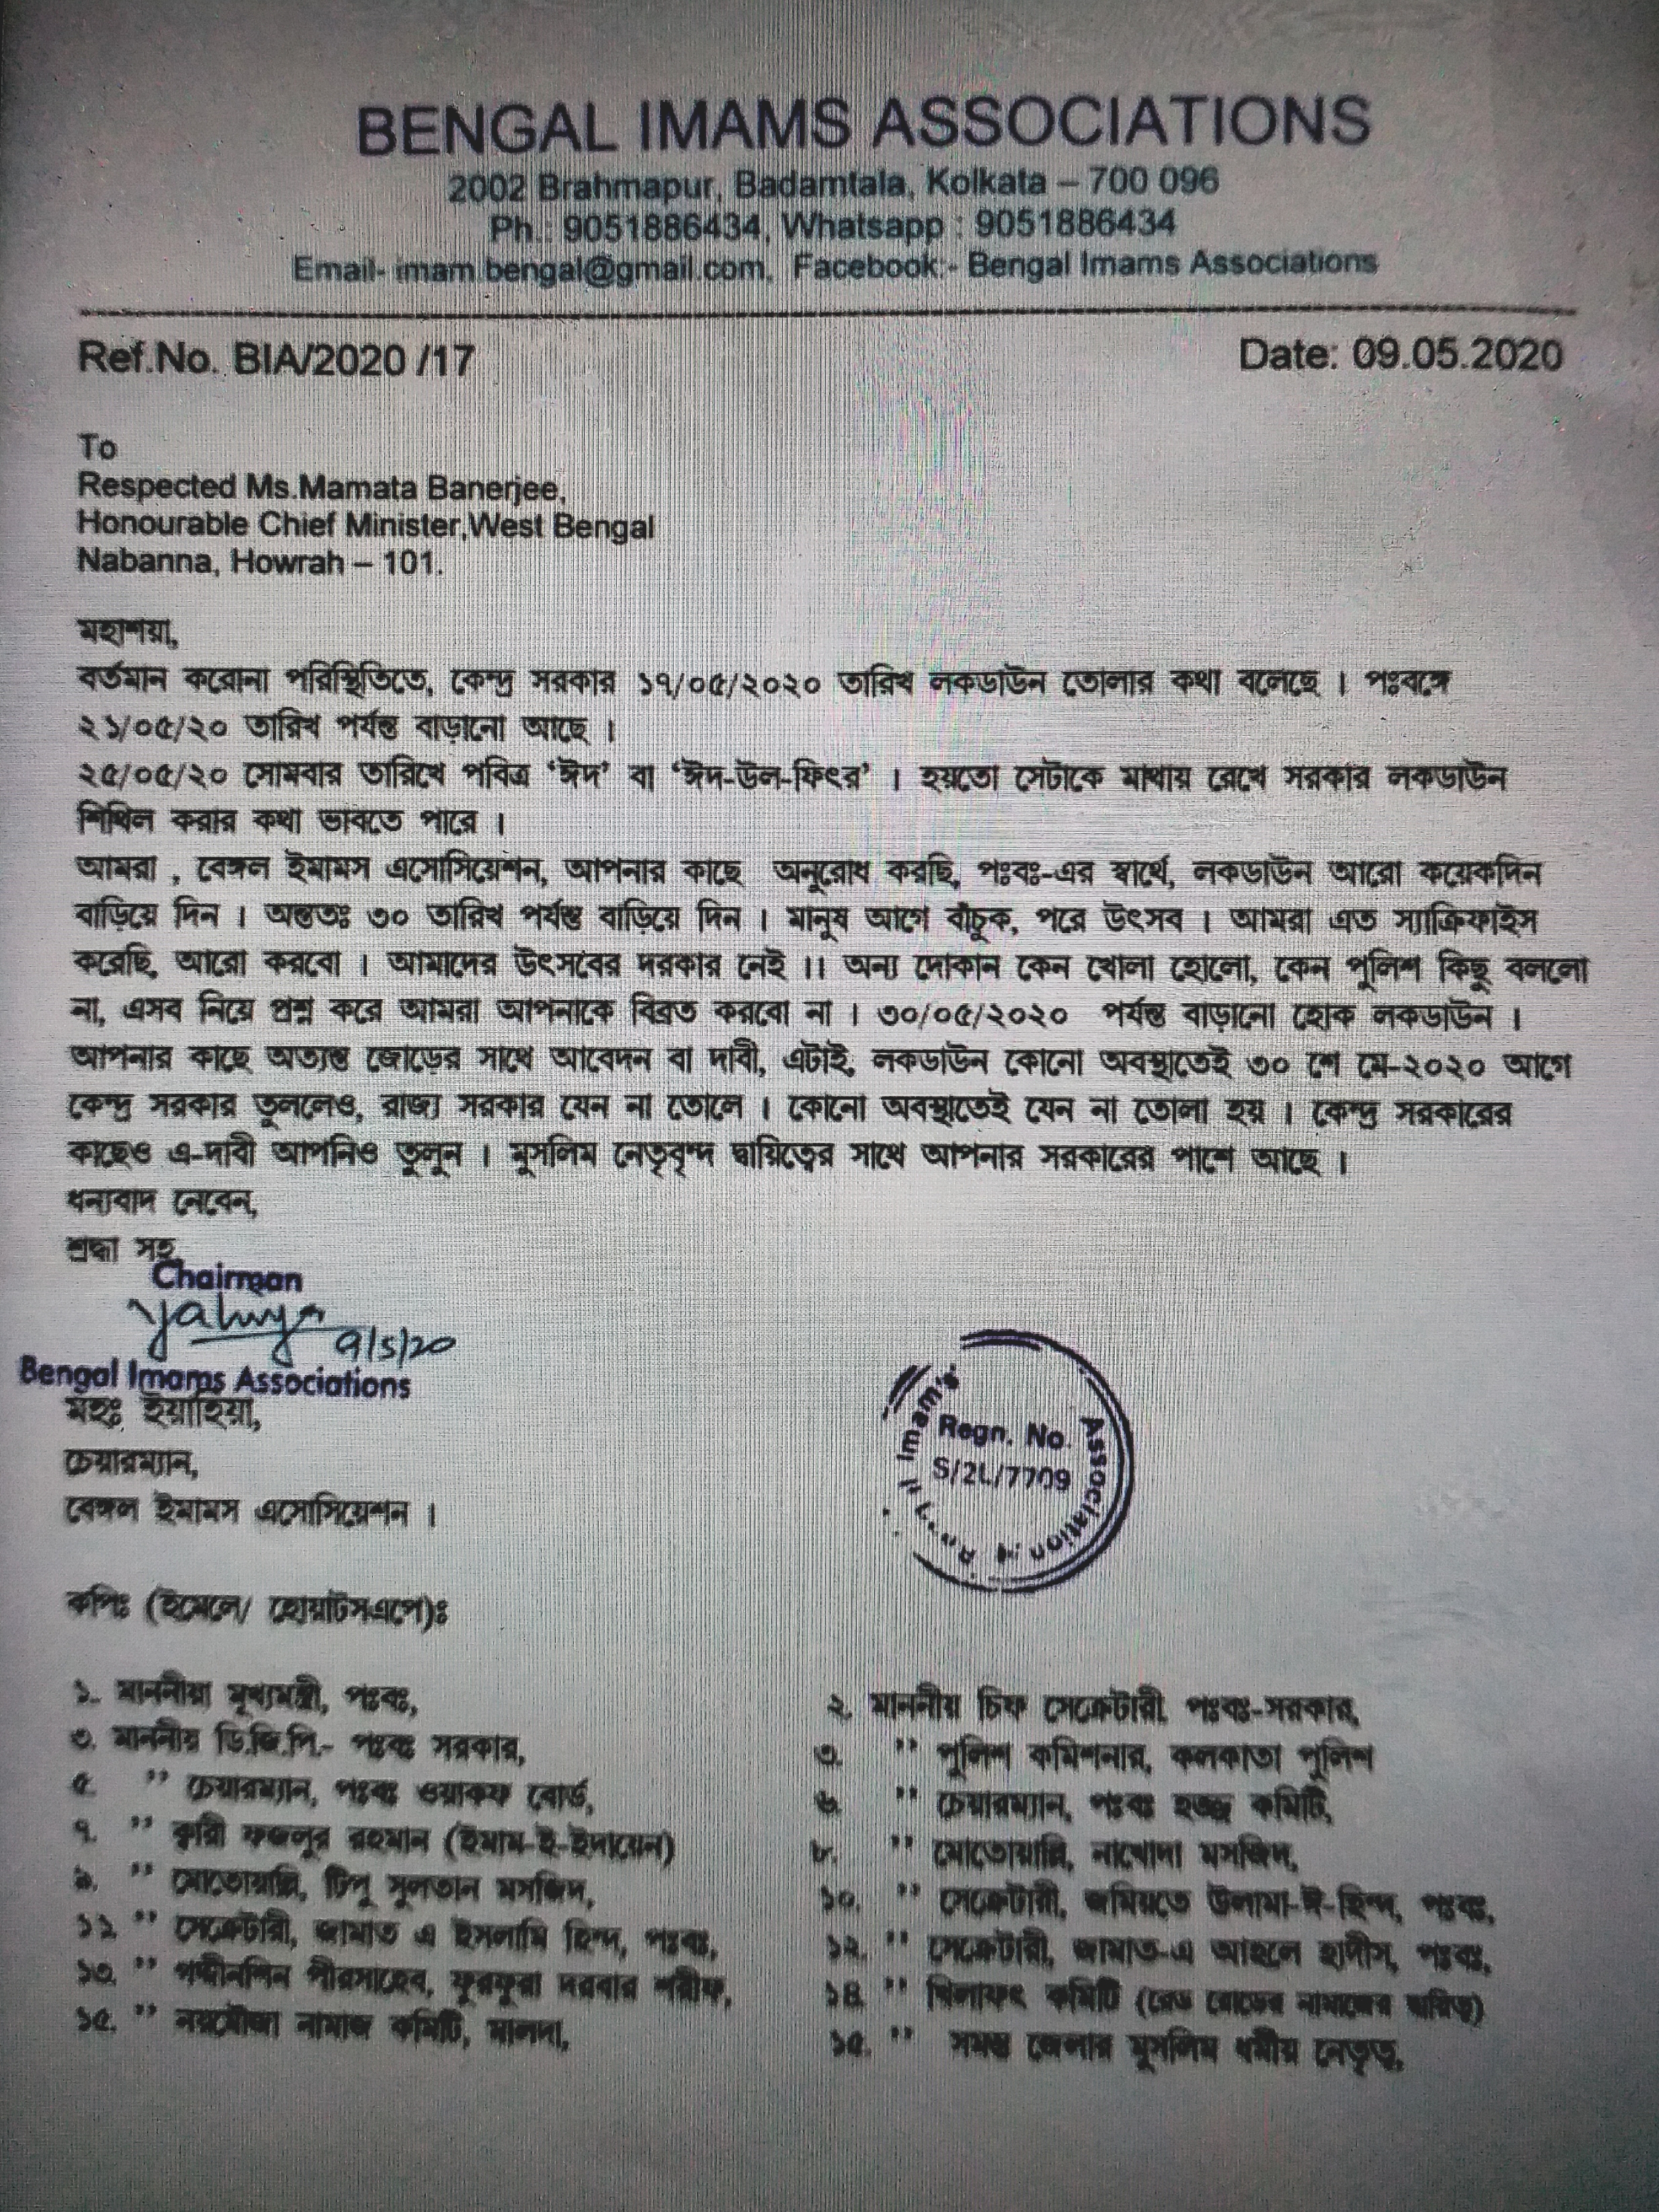 مغربی بنگال امام ایسوسی ایشن  کا لاک ڈاؤن میں توسیع کا مطالبہ